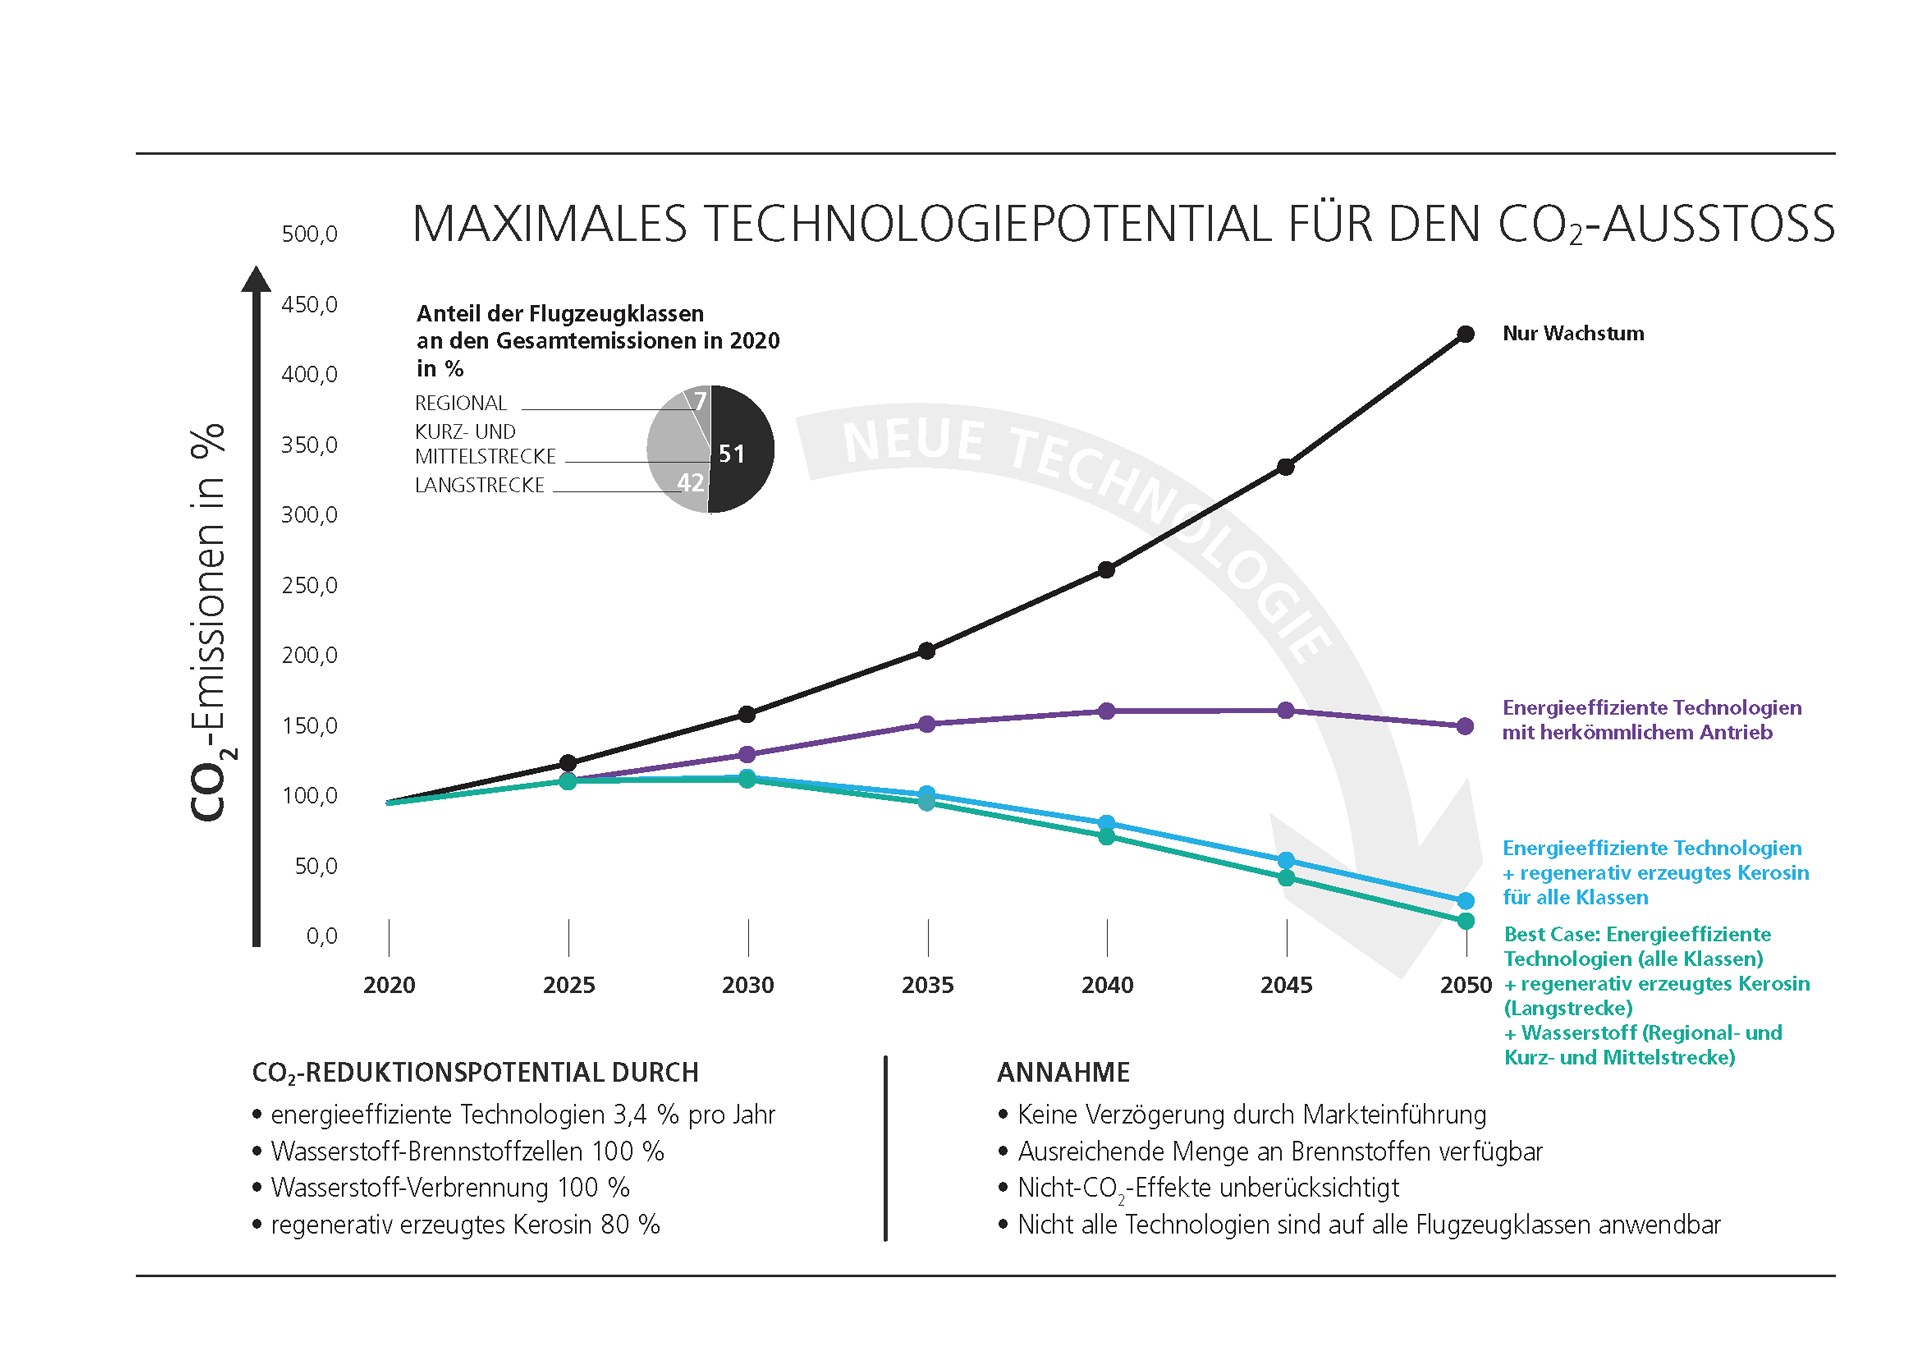 Technologiepotential für die Reduktion der CO2-Emissionen